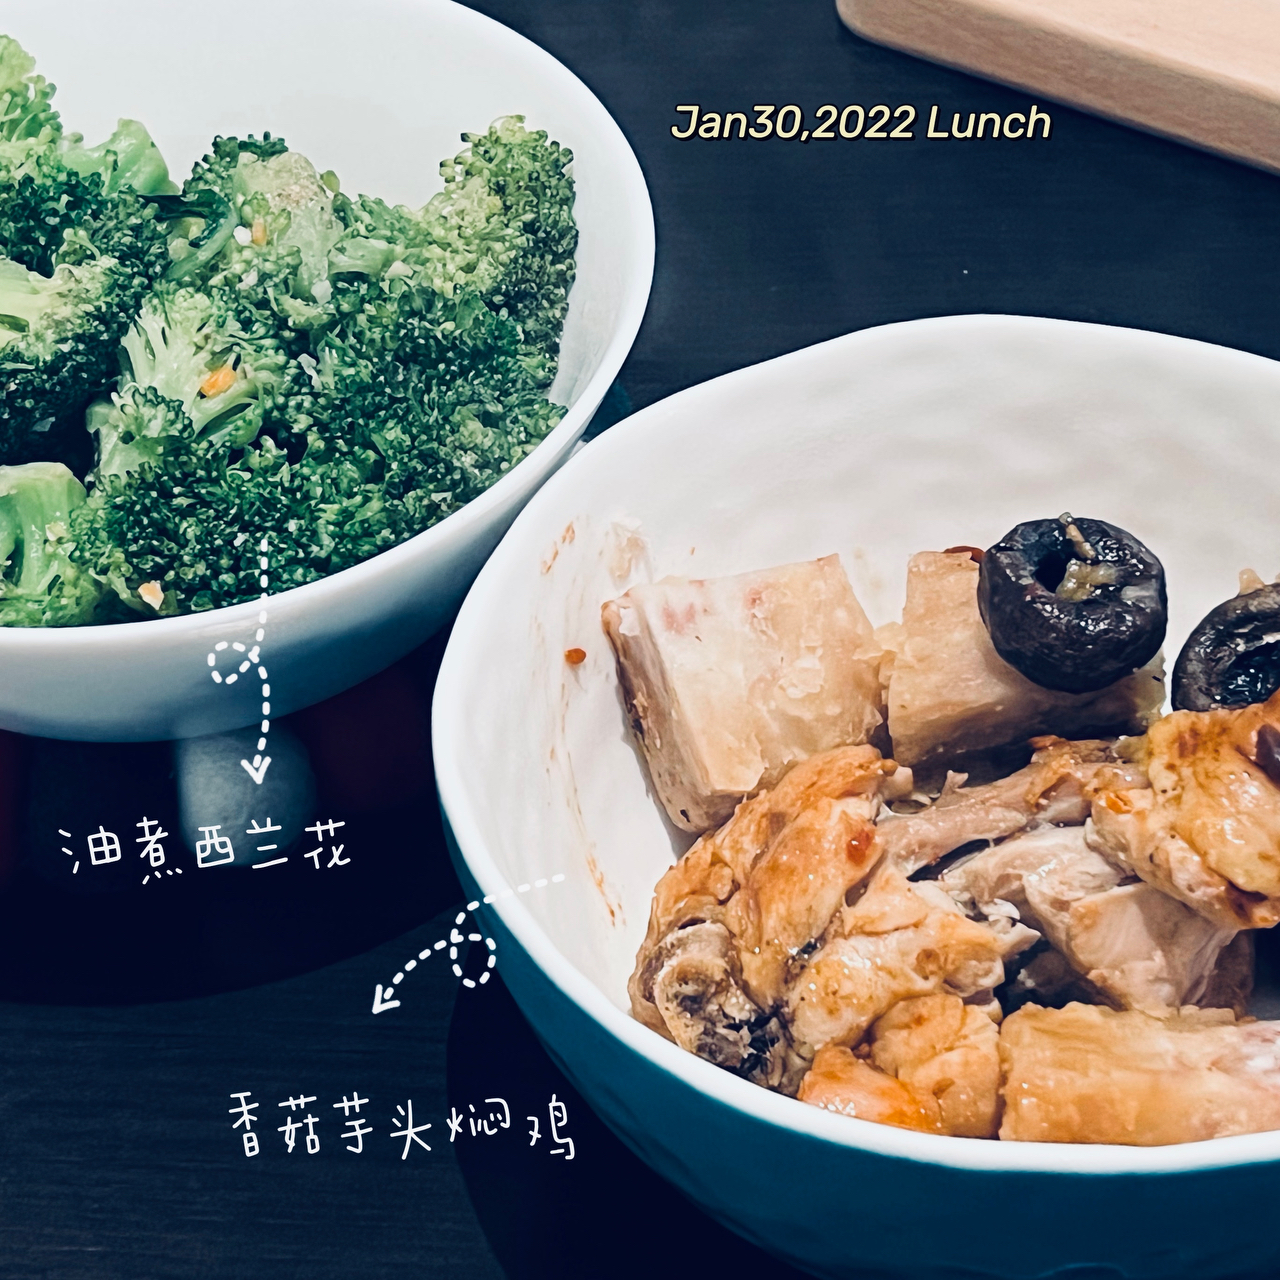 午餐•2022年1月30日